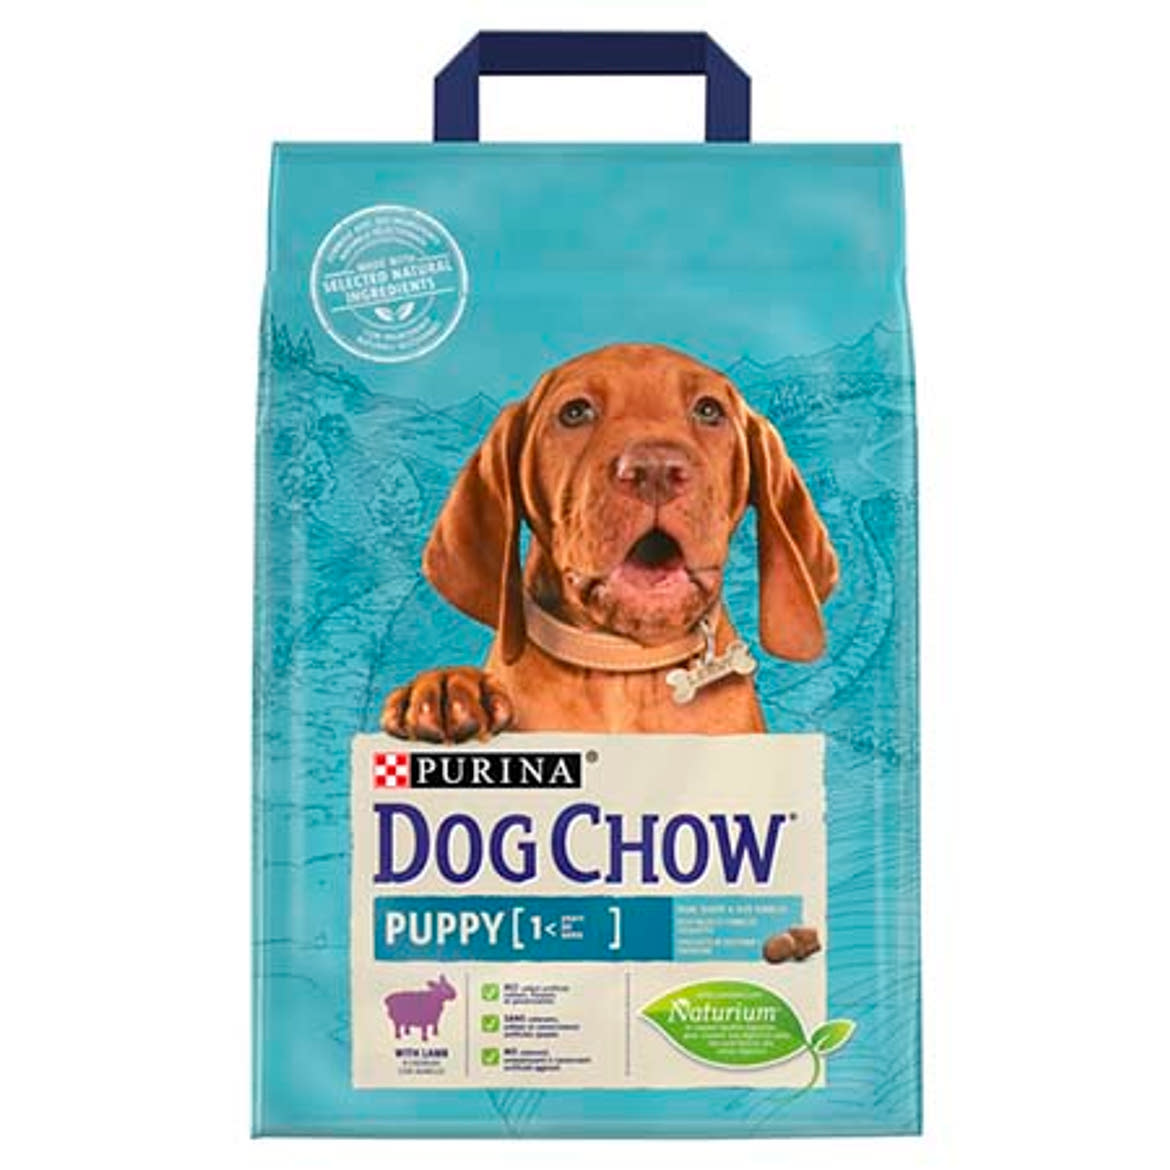 Dog Chow kutya szárazeledel puppy bárány